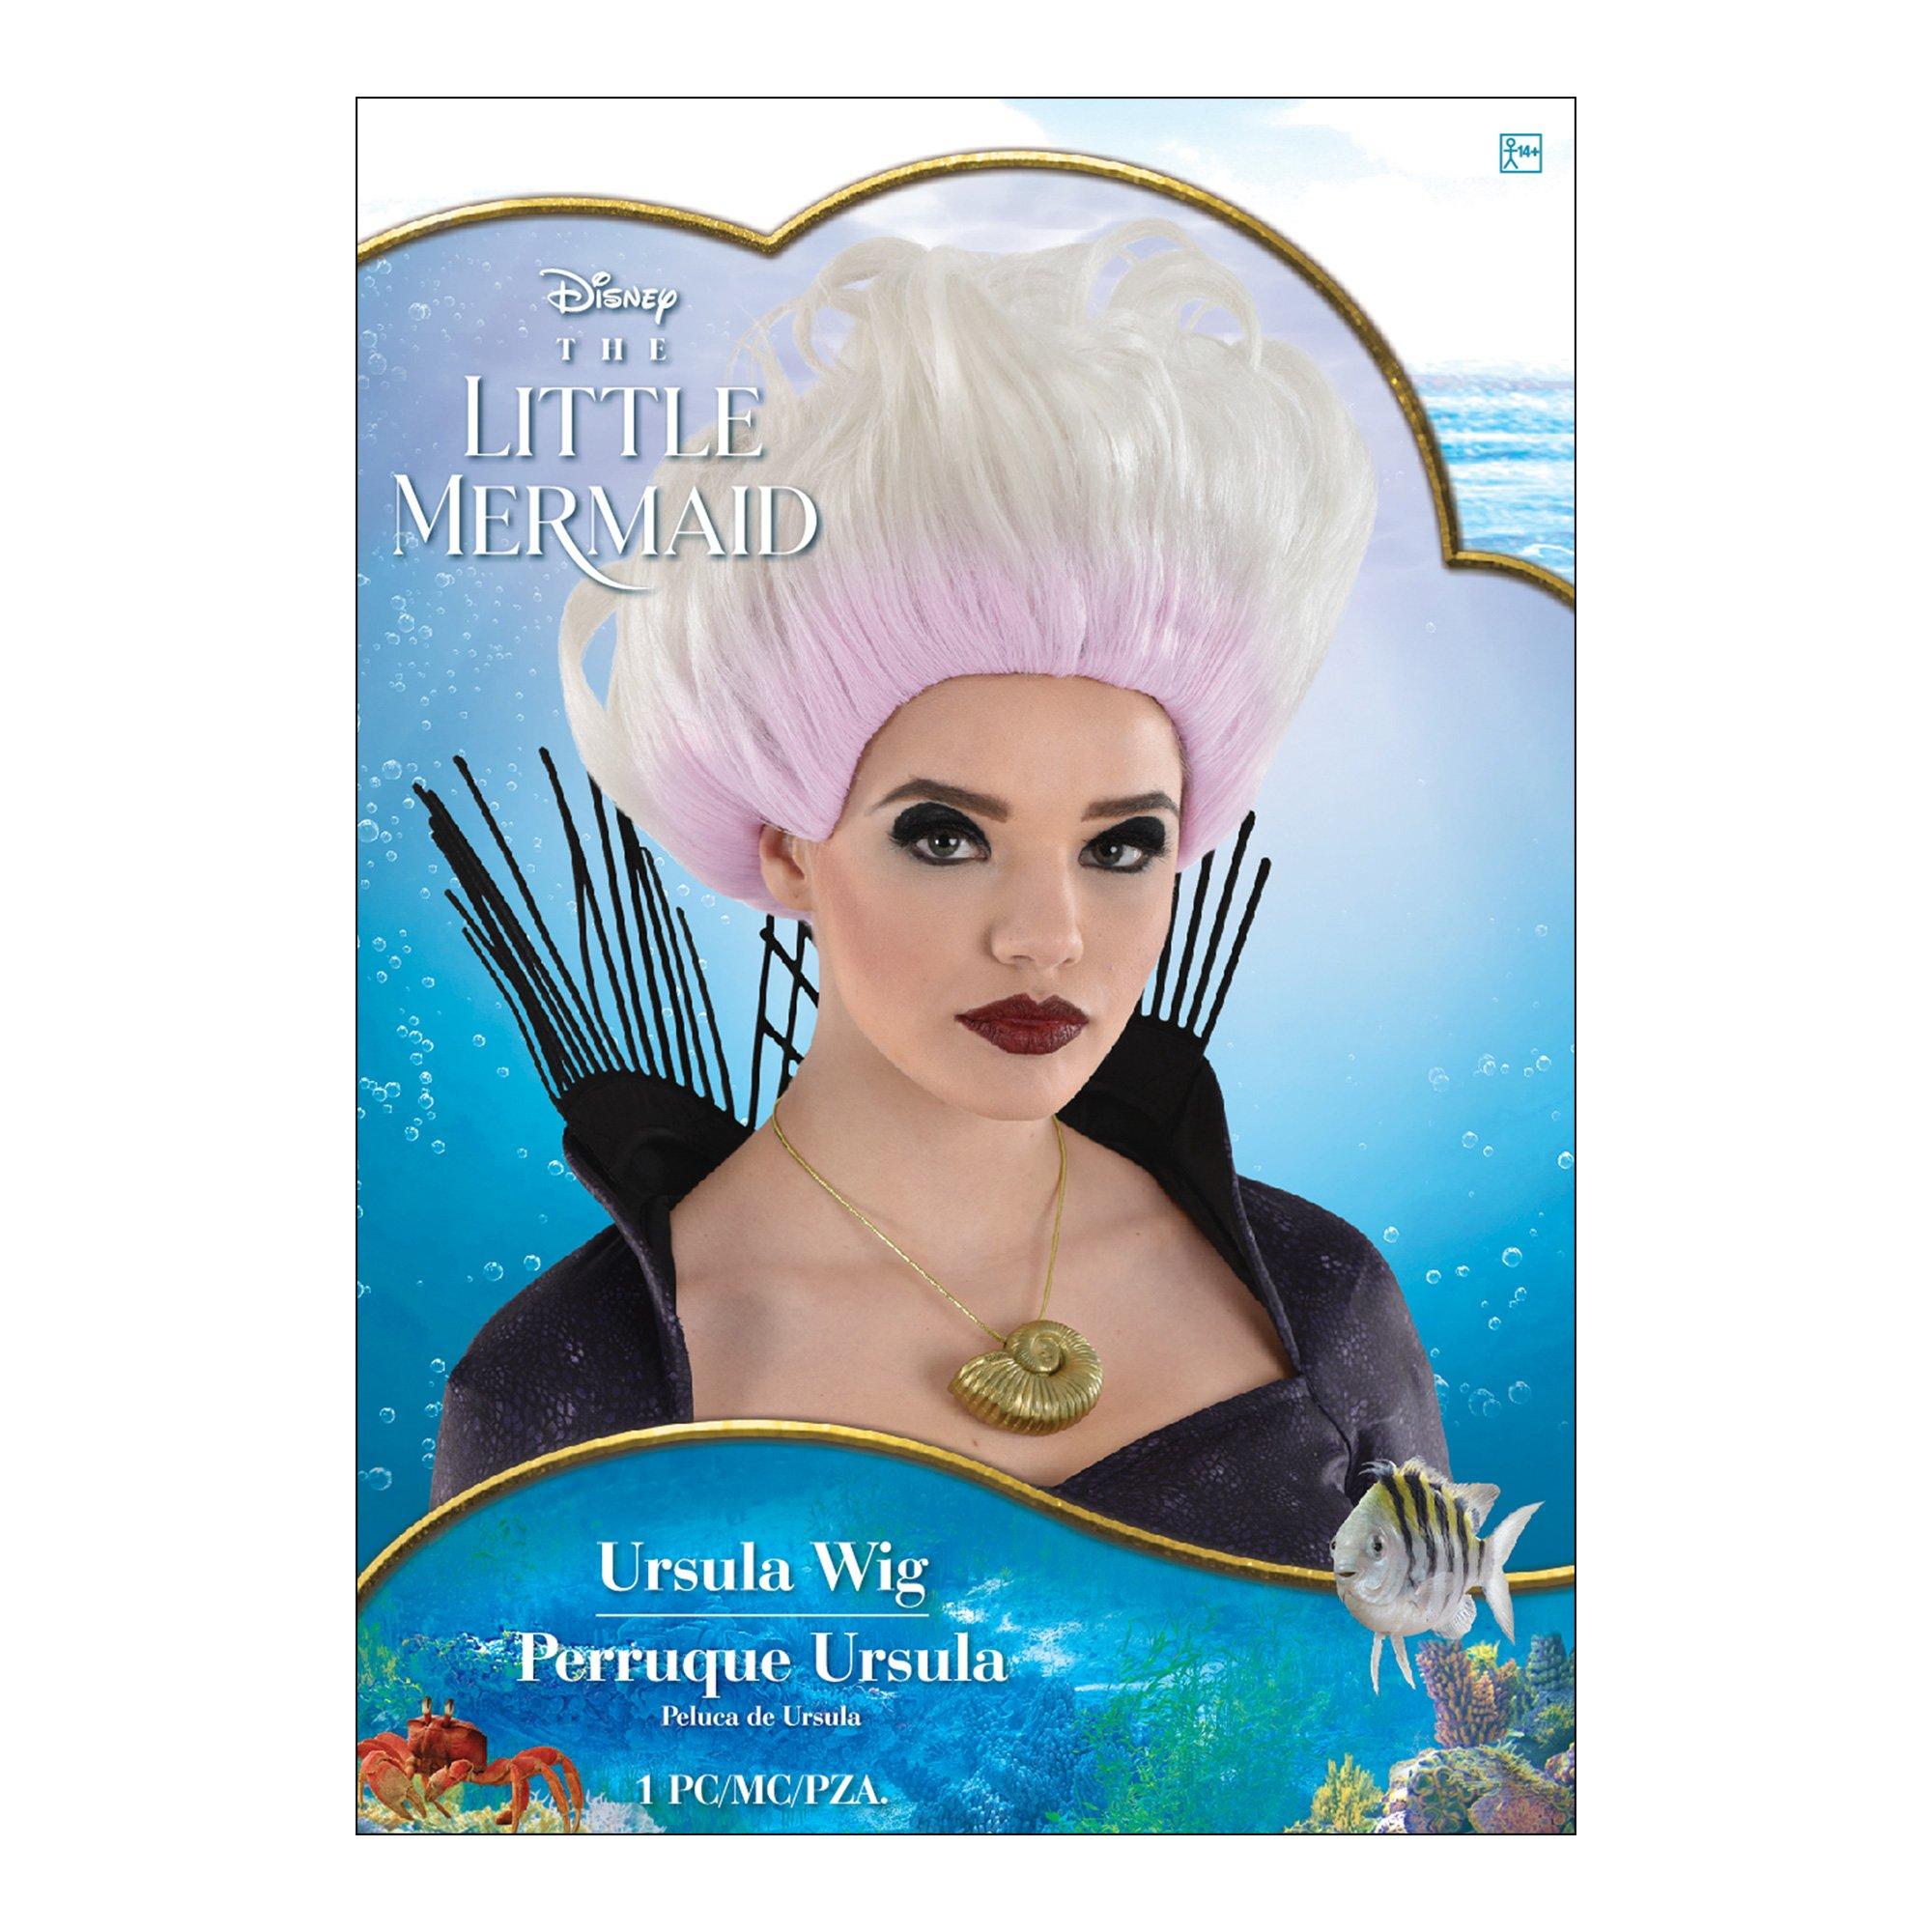 Adult Ursula Wig - The Little Mermaid Movie 2023